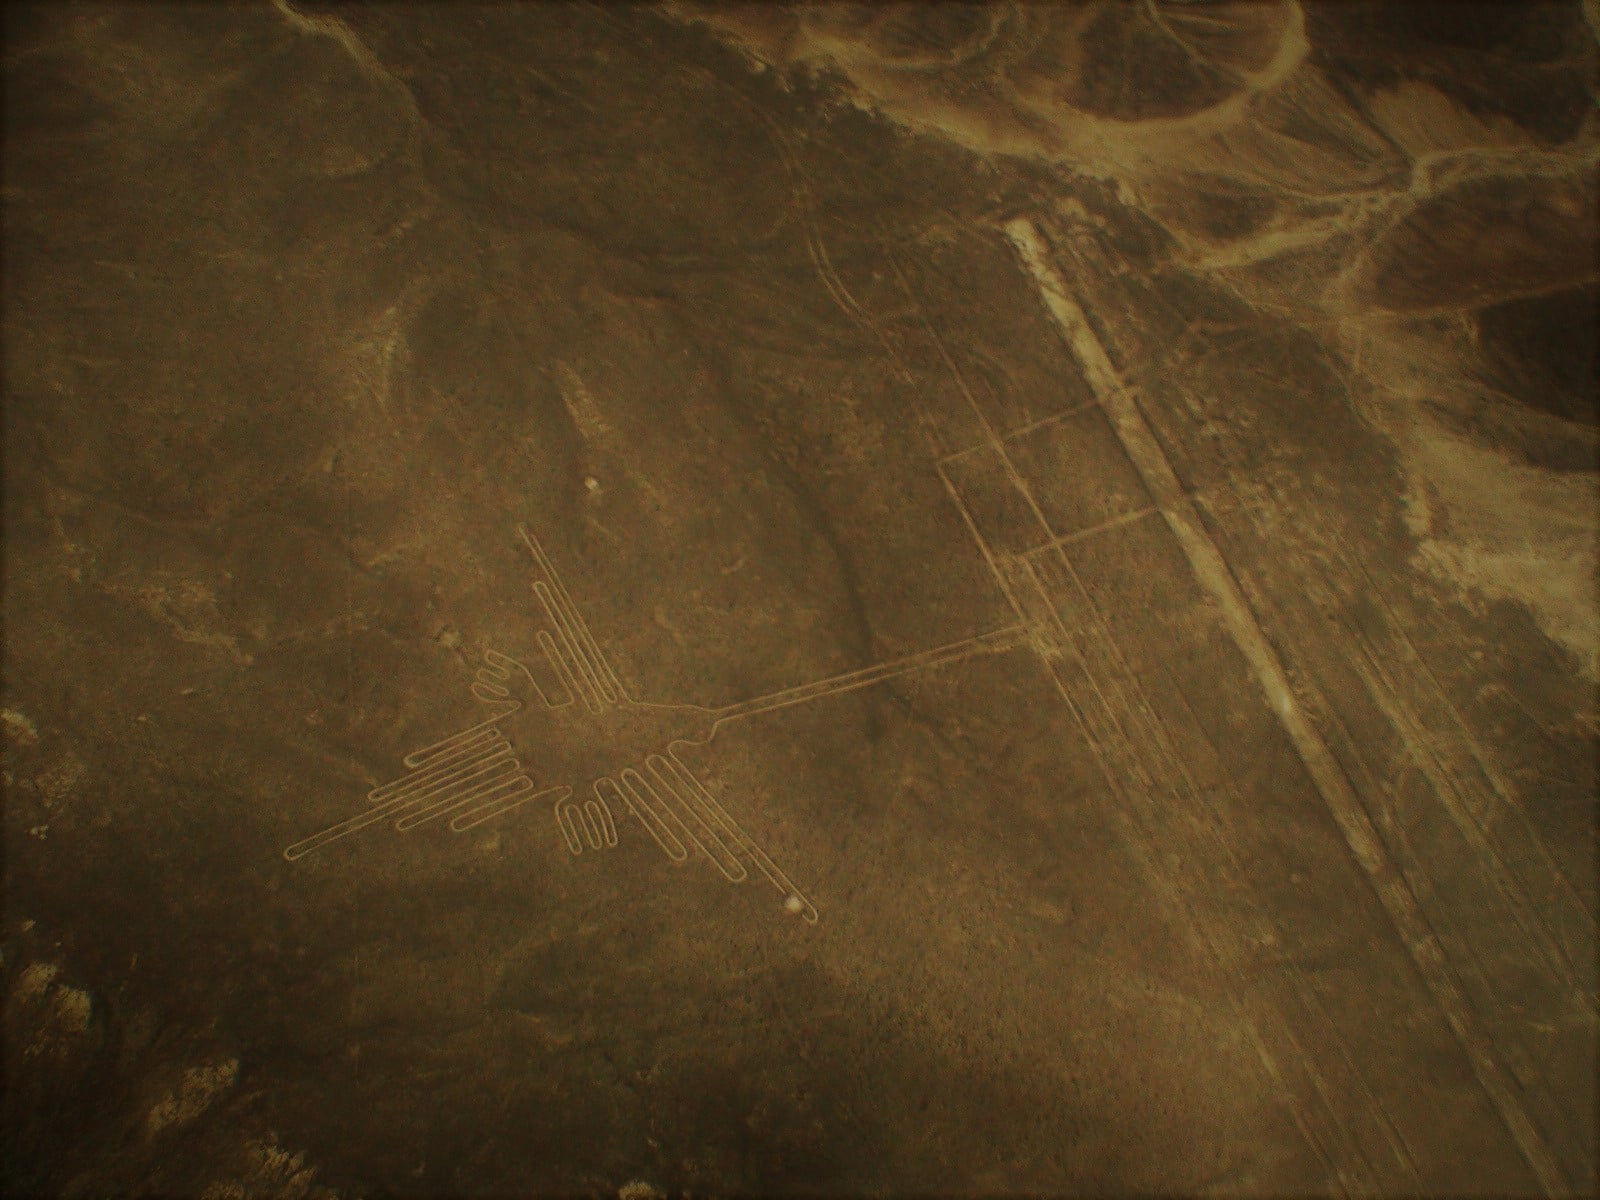 Pássaro - petroglifos nas linhas de Nazca. Foto: Ana Arantes